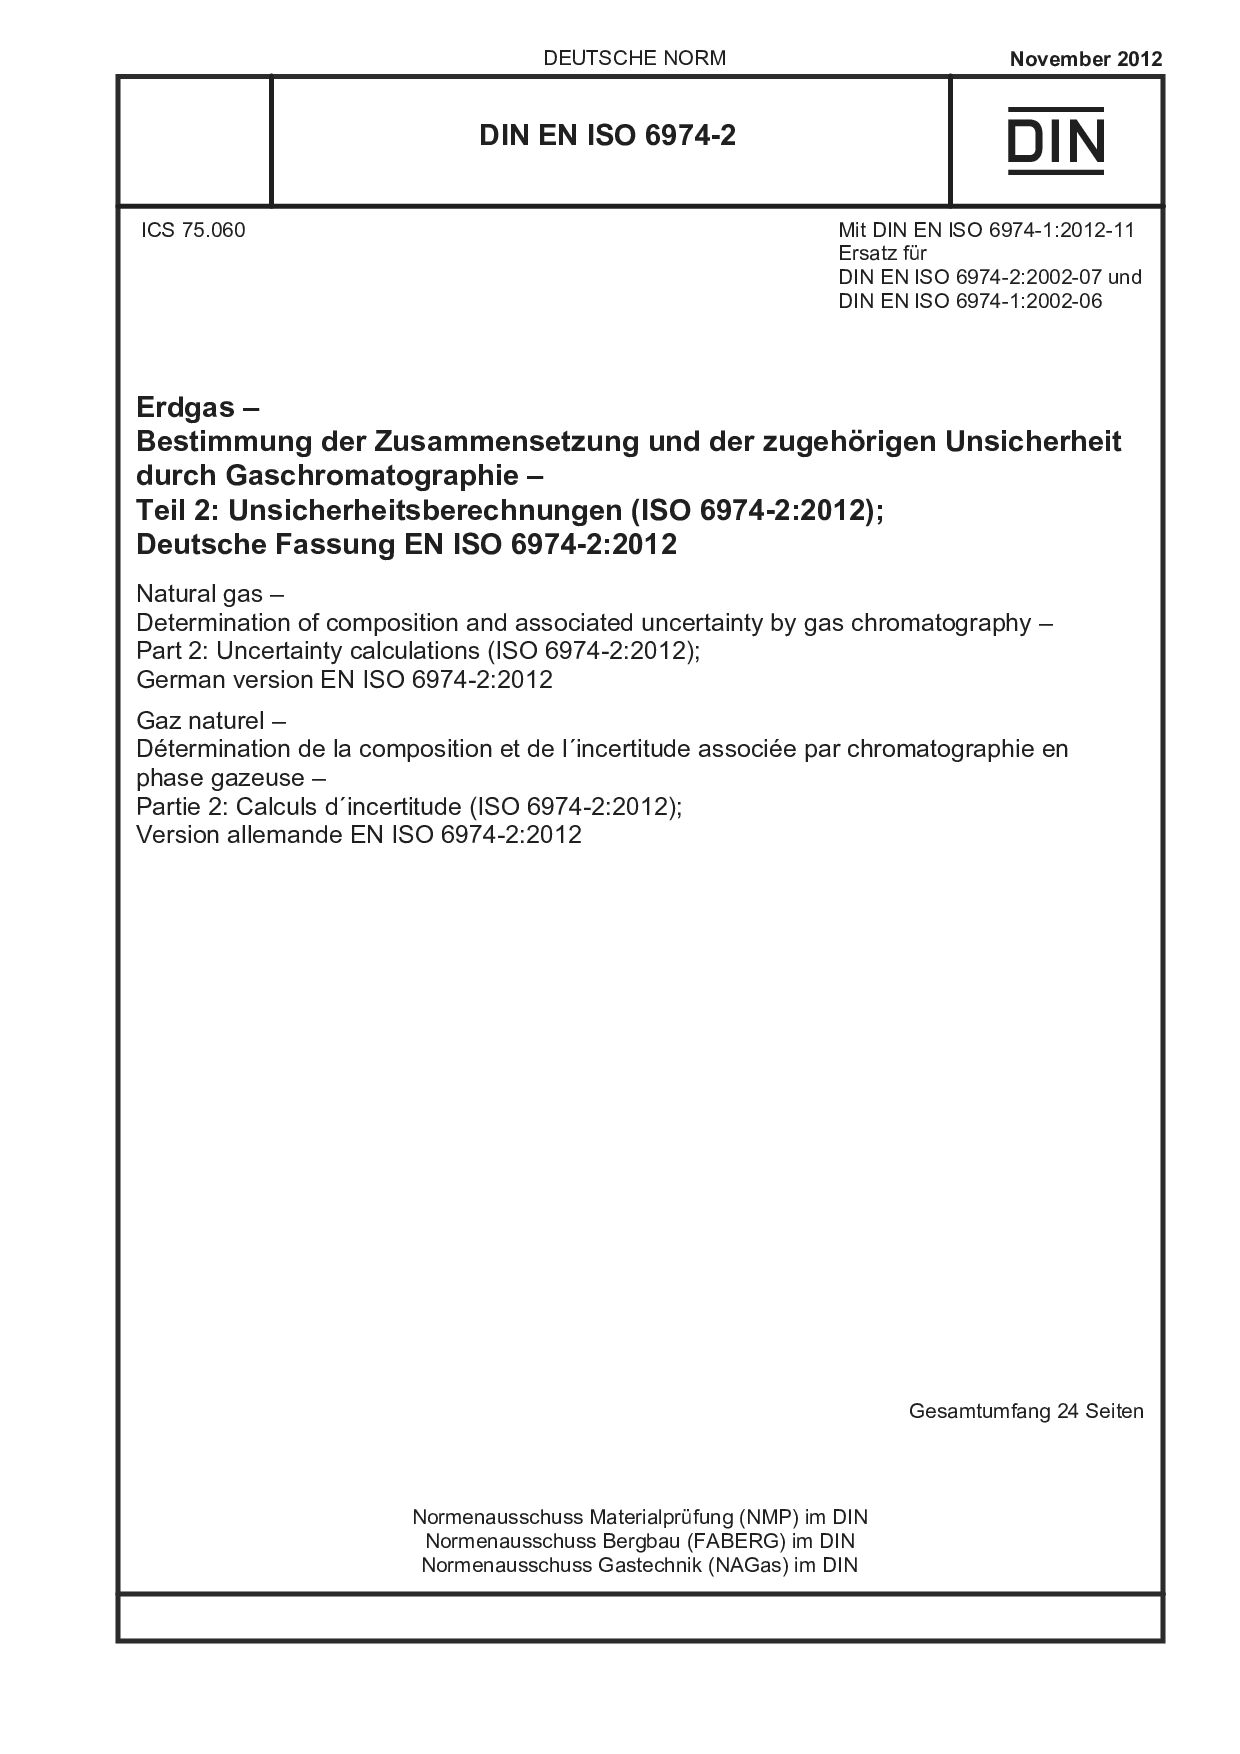 DIN EN ISO 6974-2:2012